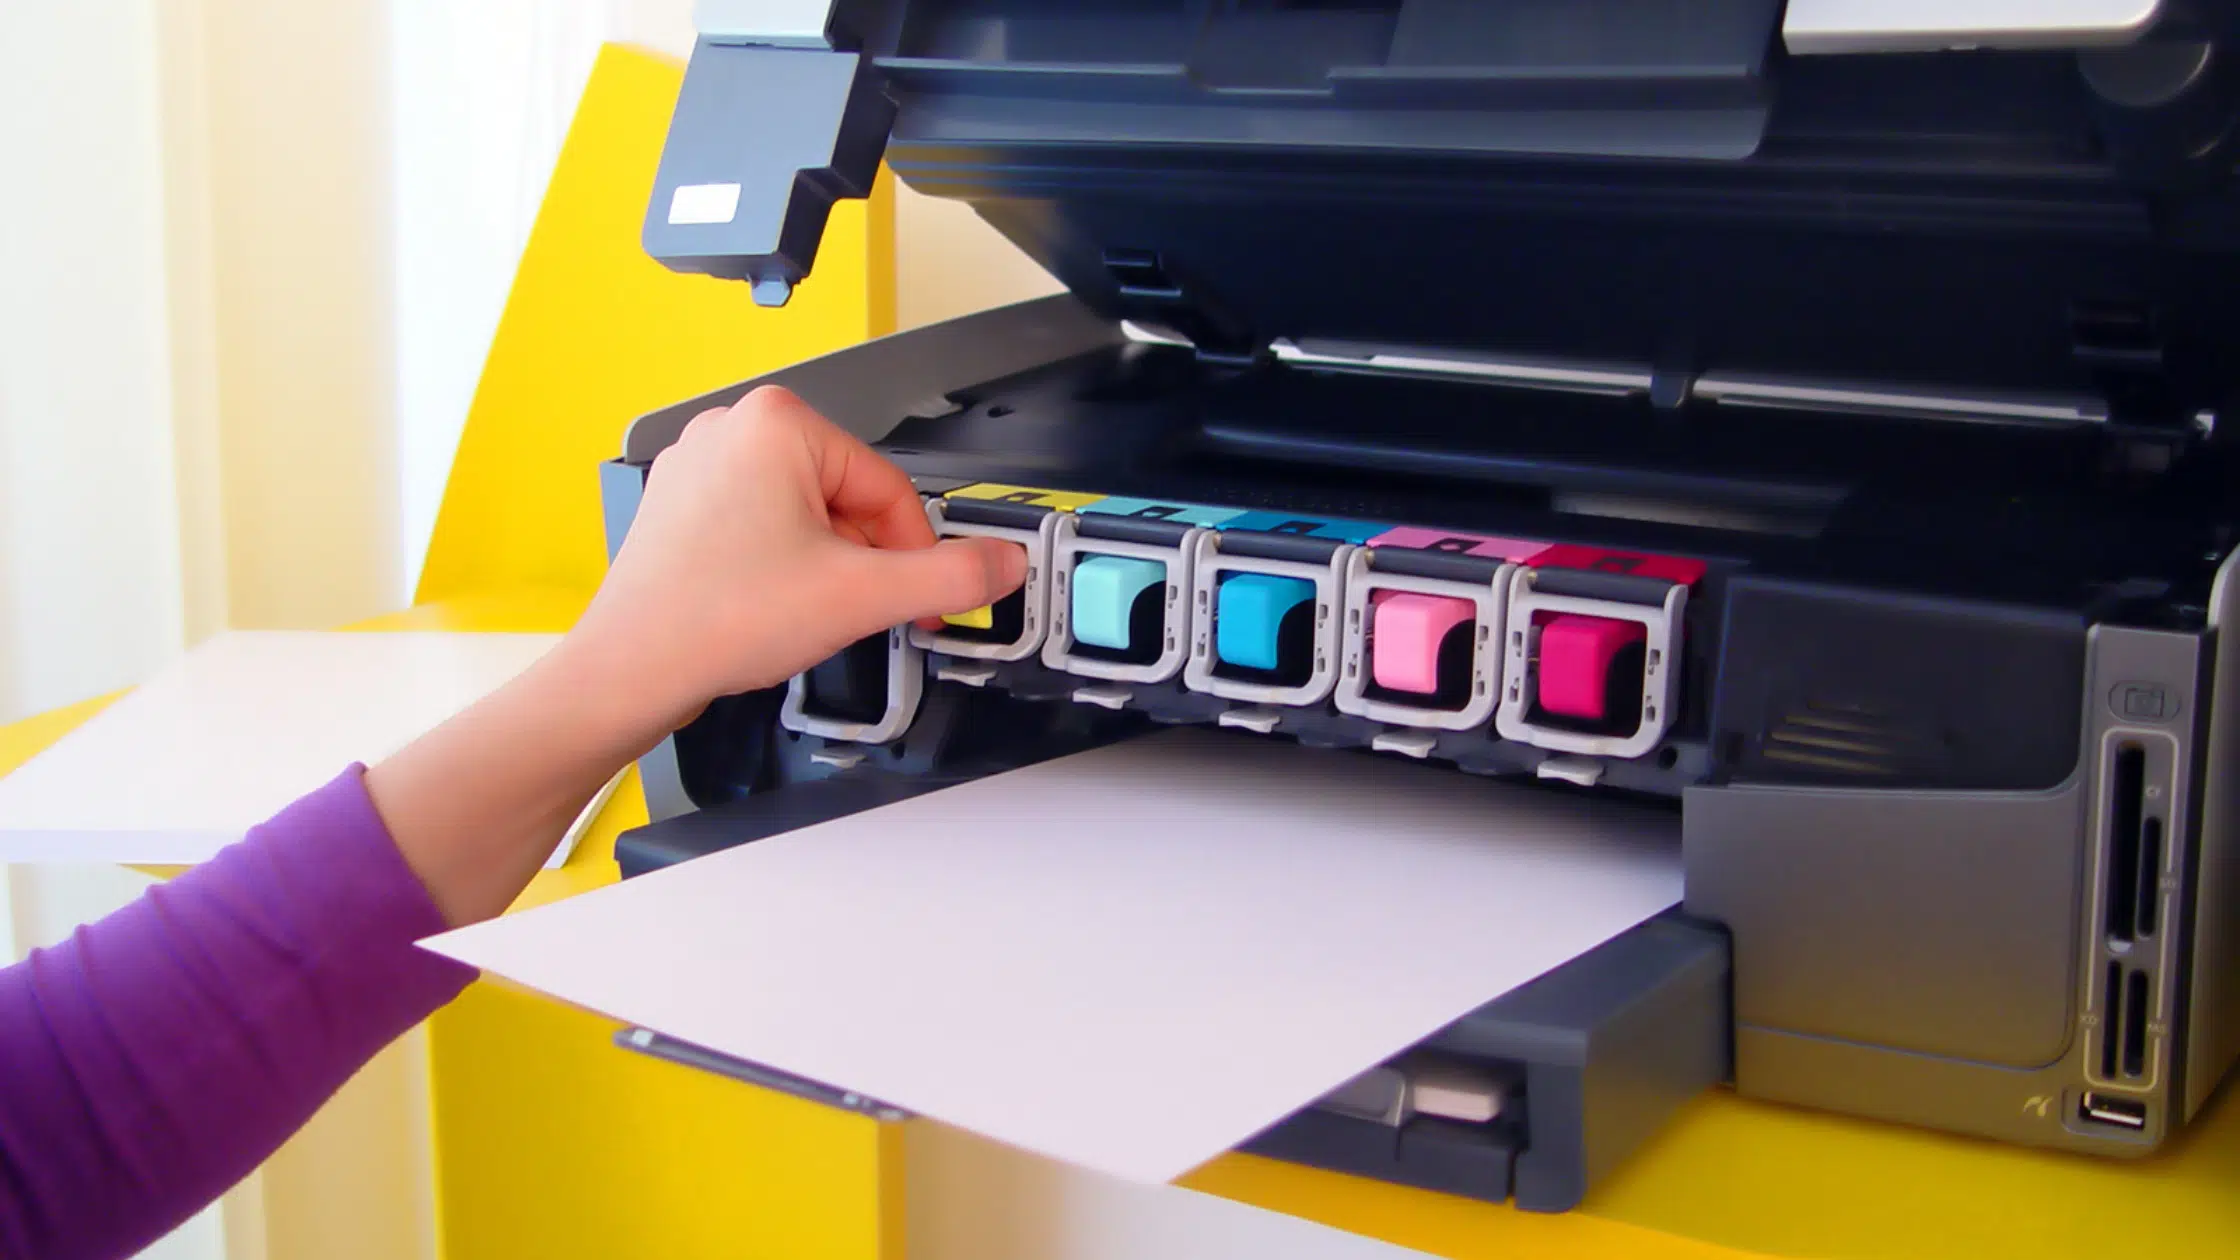 Принтер печатает ярко